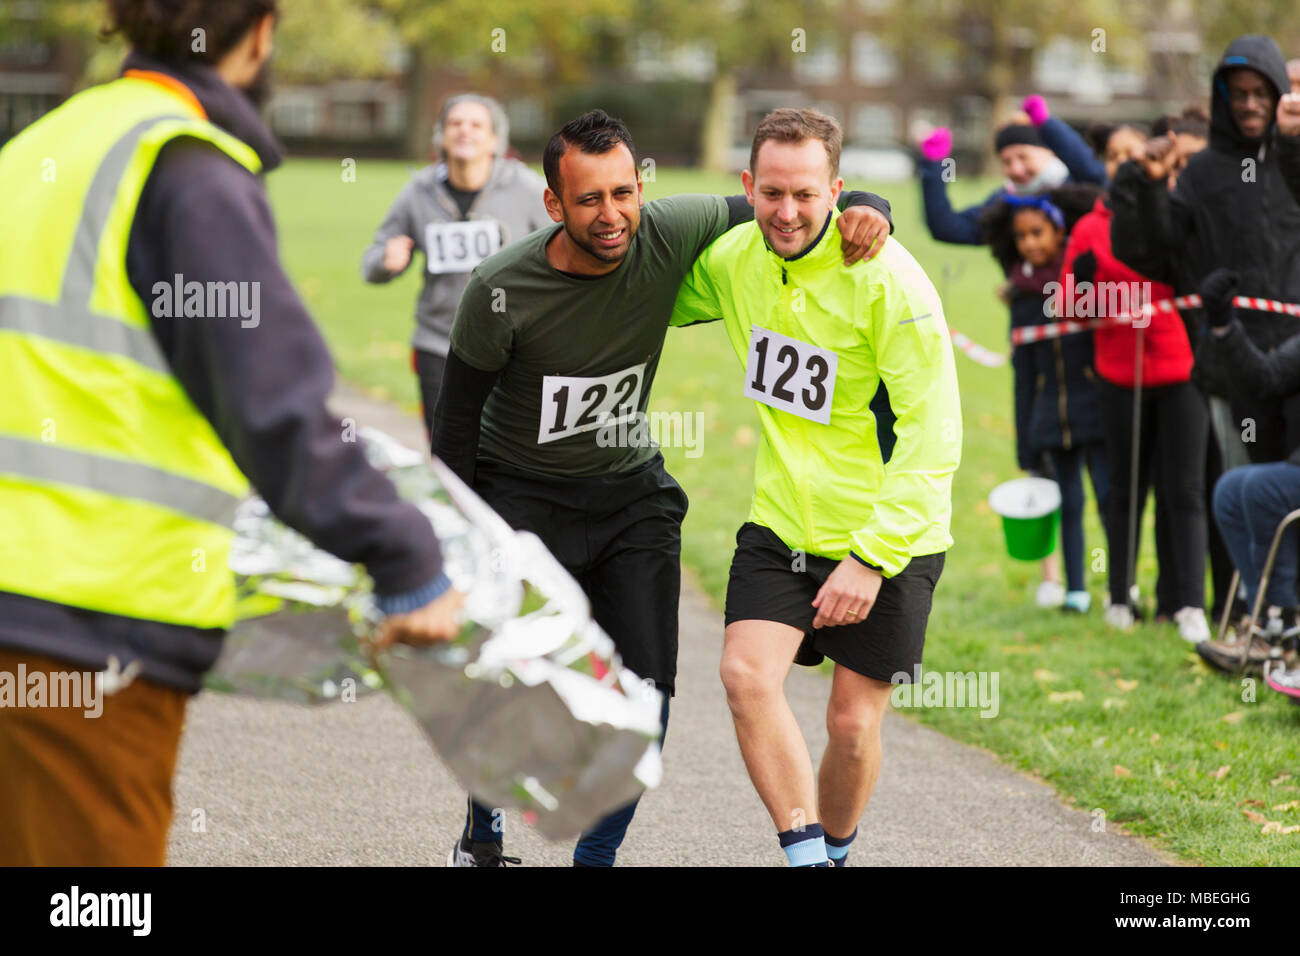 Runner helping injured man running at marathon Stock Photo